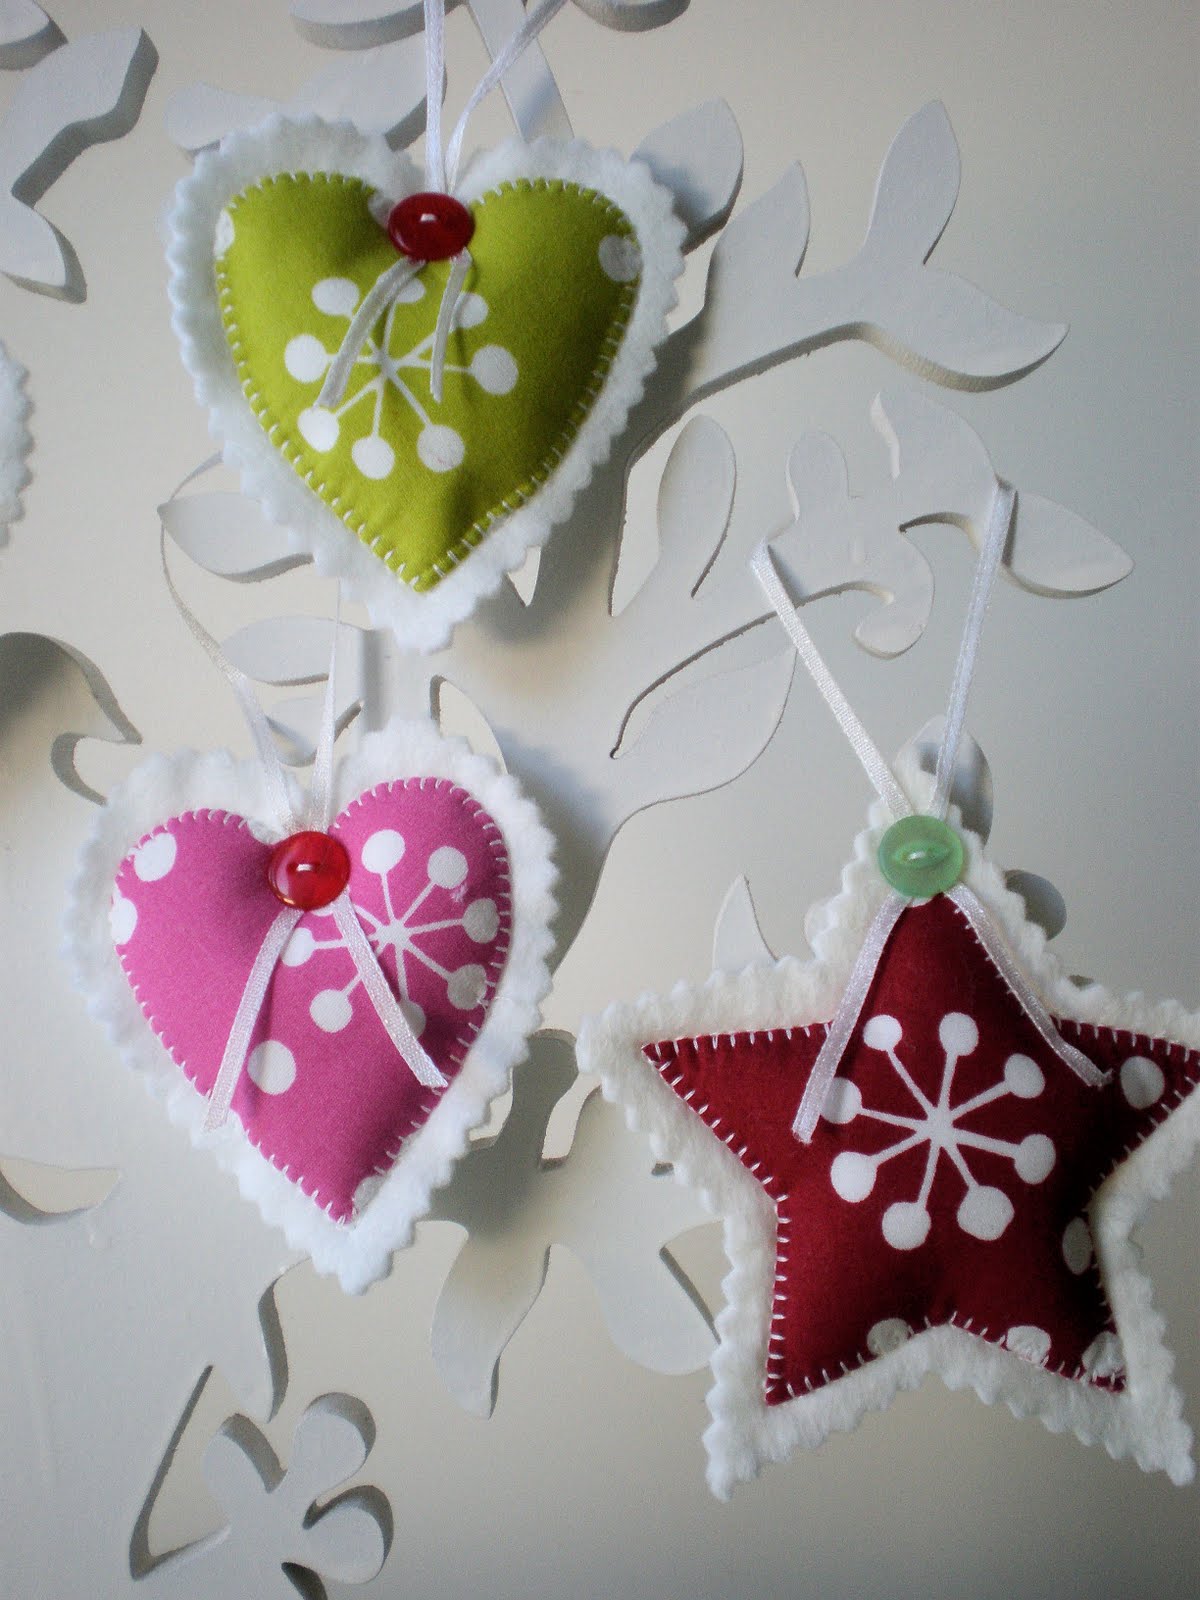 Felt Christmas Ornament Ideas